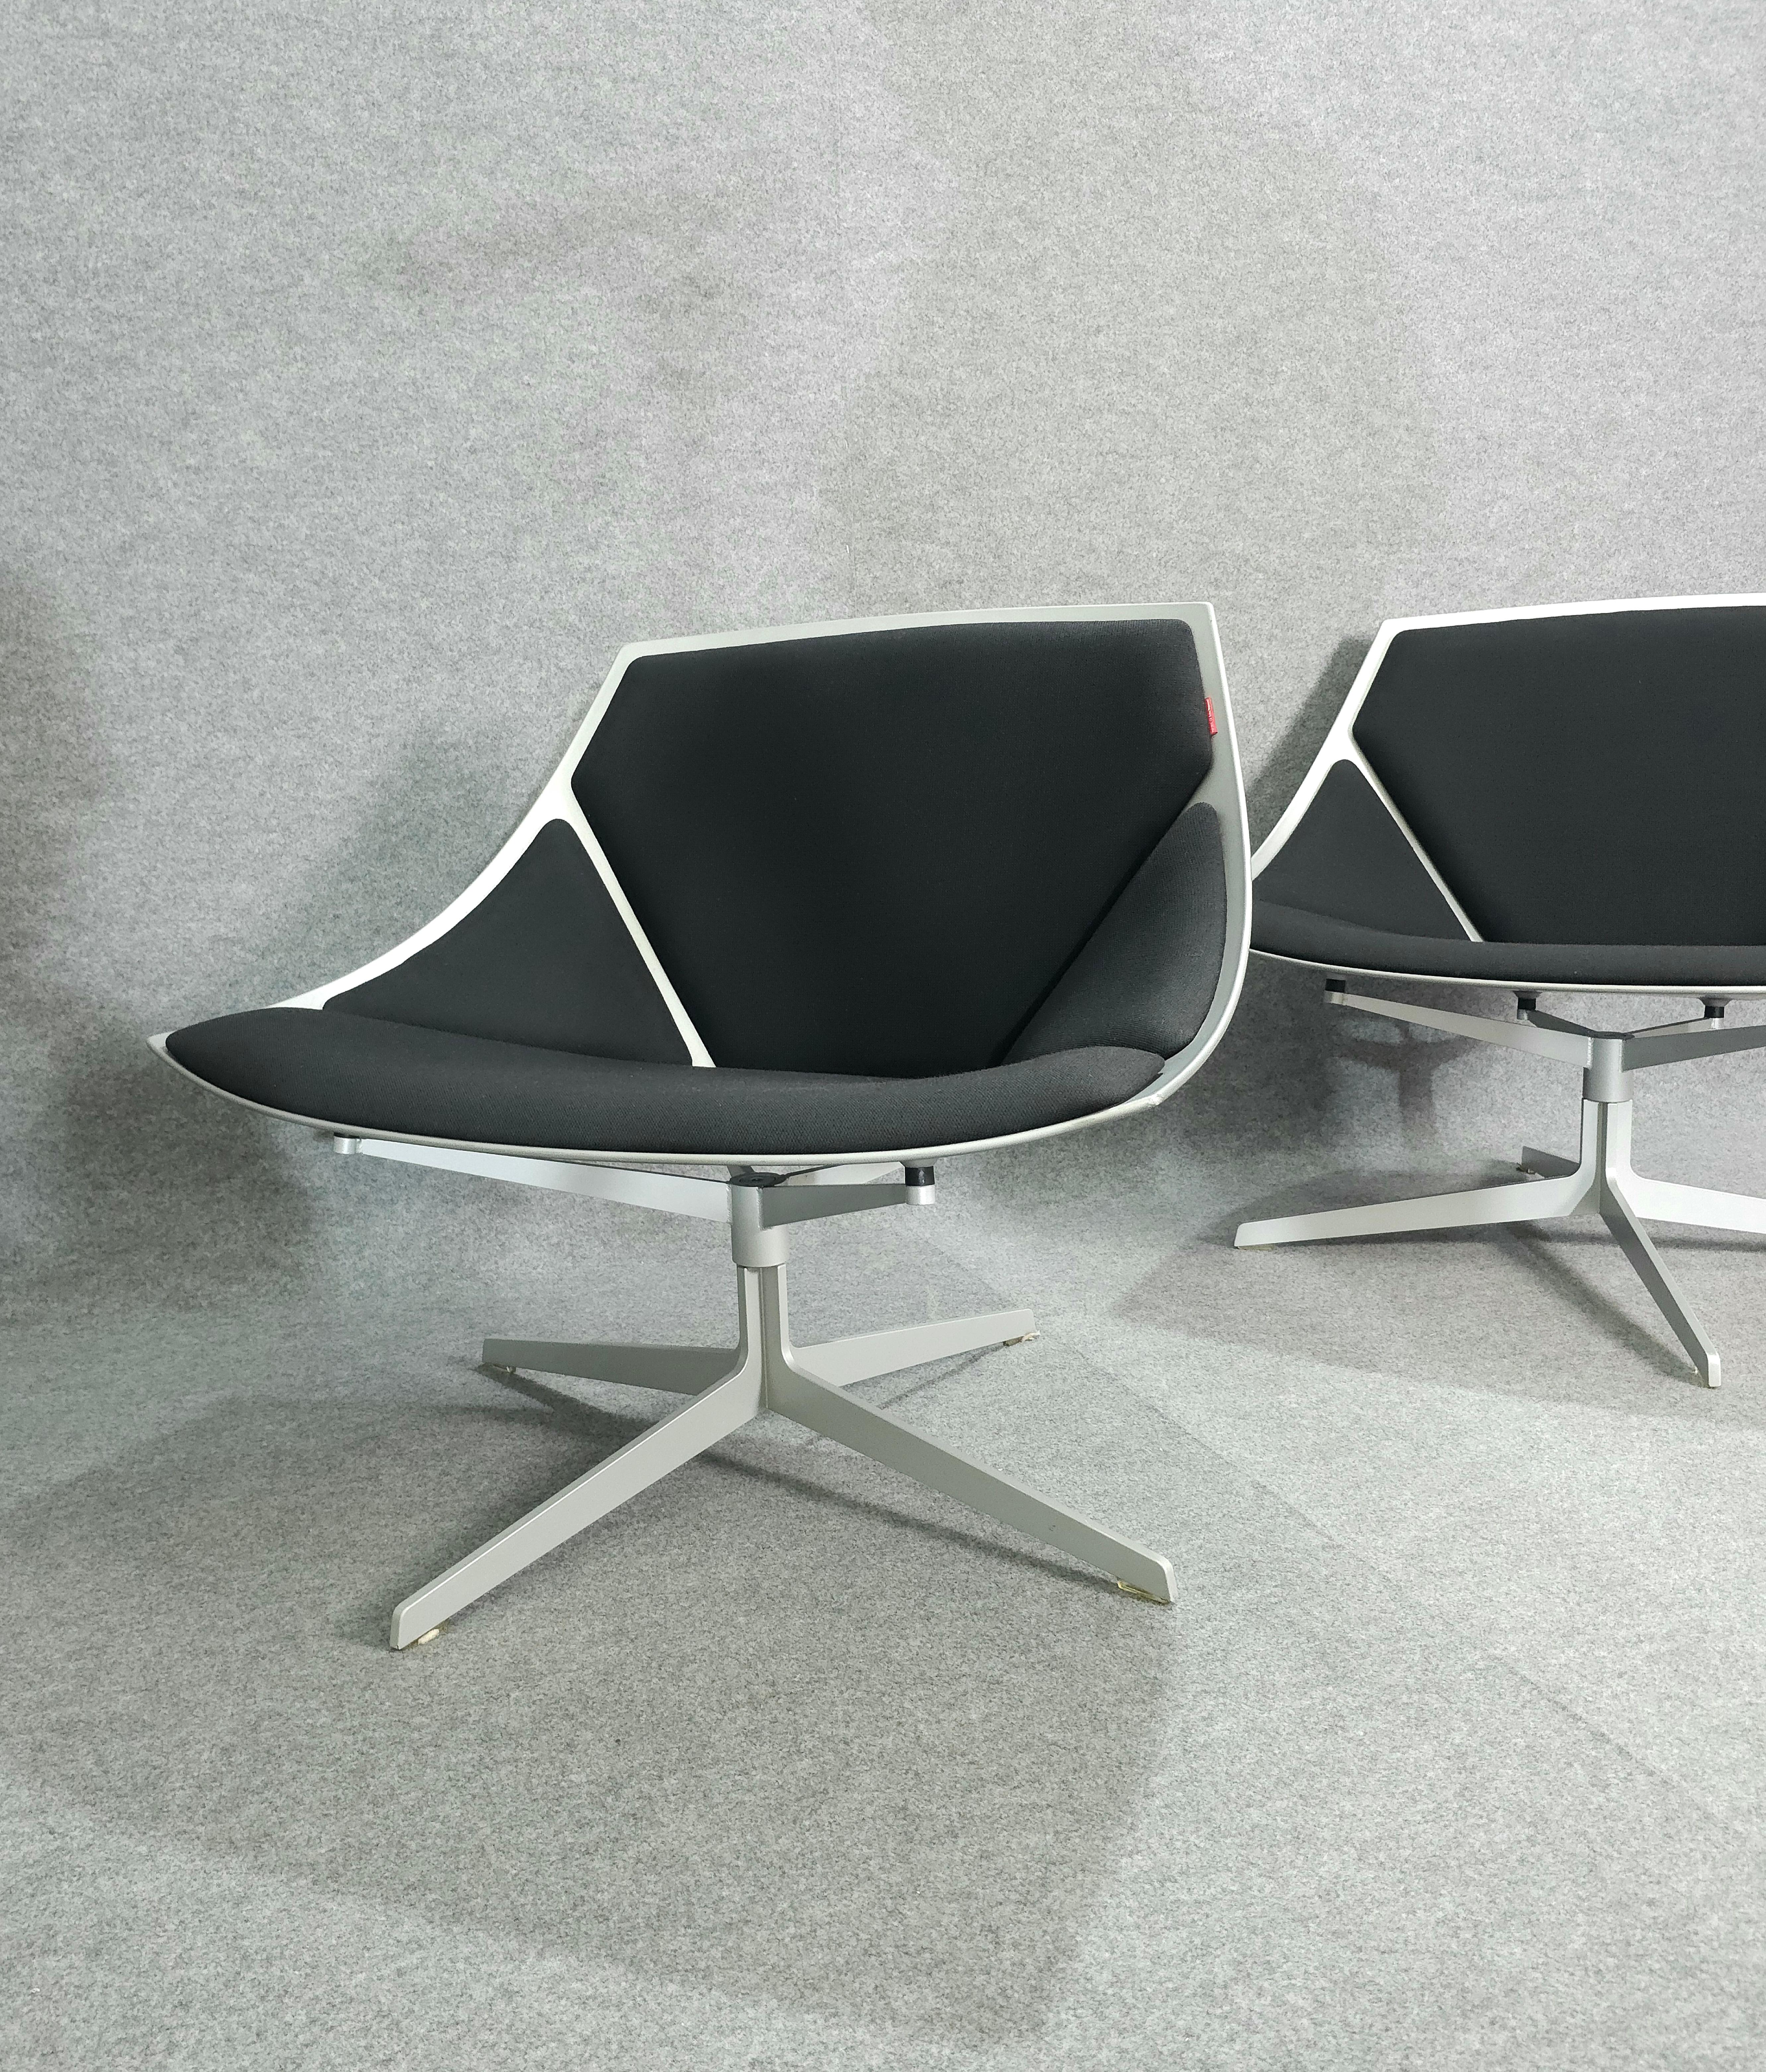 Jehs & Laub for Fritz Hansen Swivel Chair Modern Pair Denmark Design 2007 For Sale 3